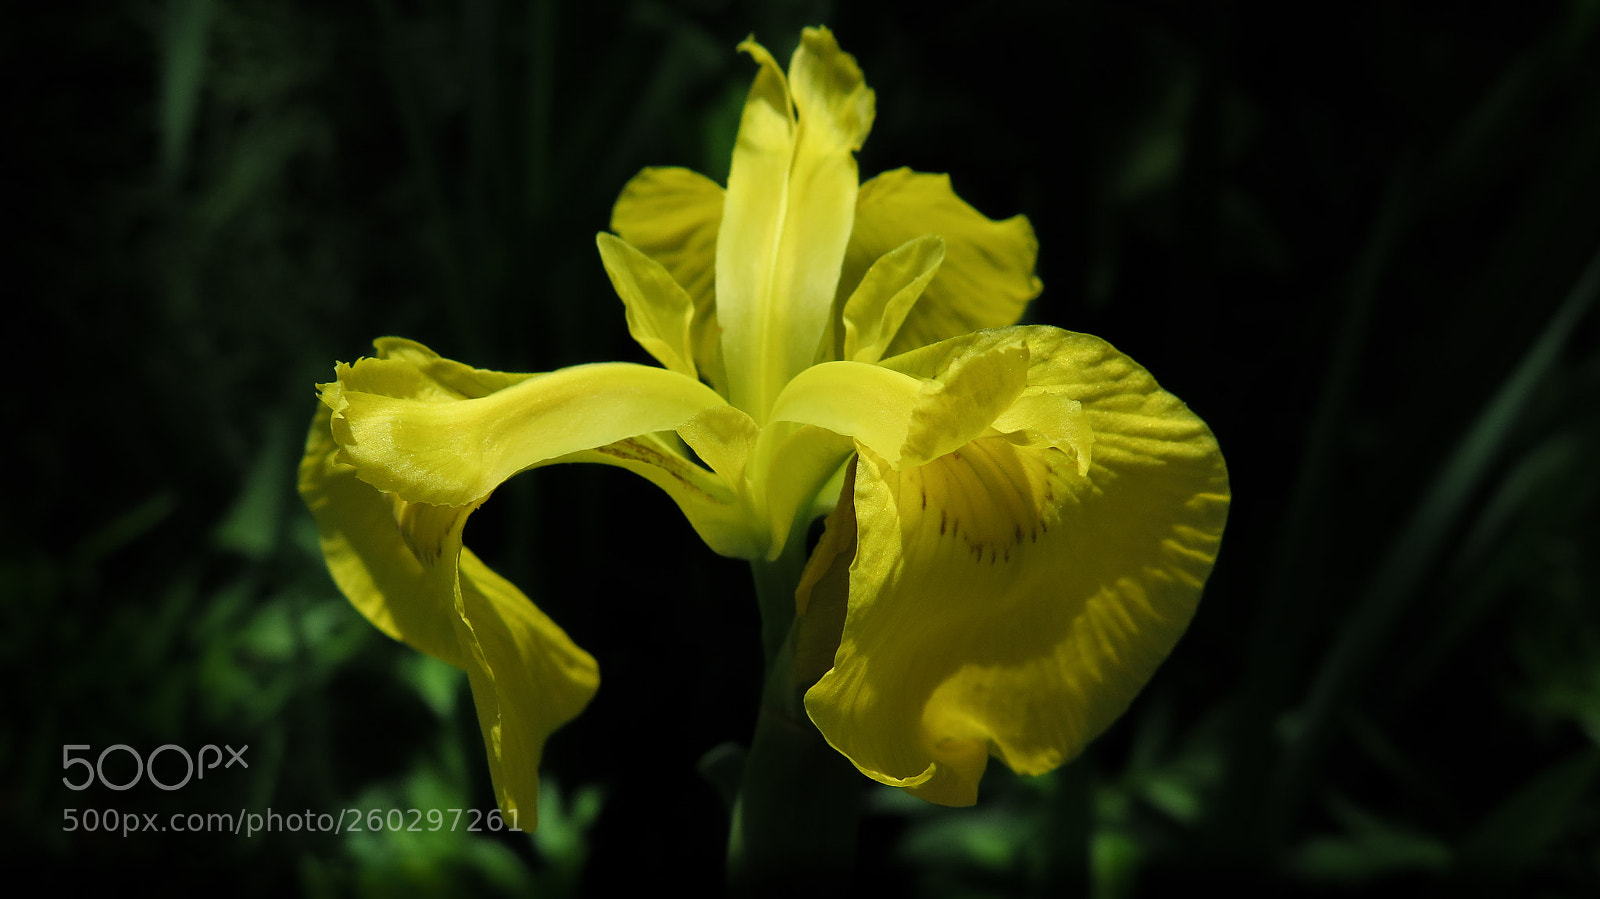 Canon PowerShot G16 sample photo. Yellow iris photography